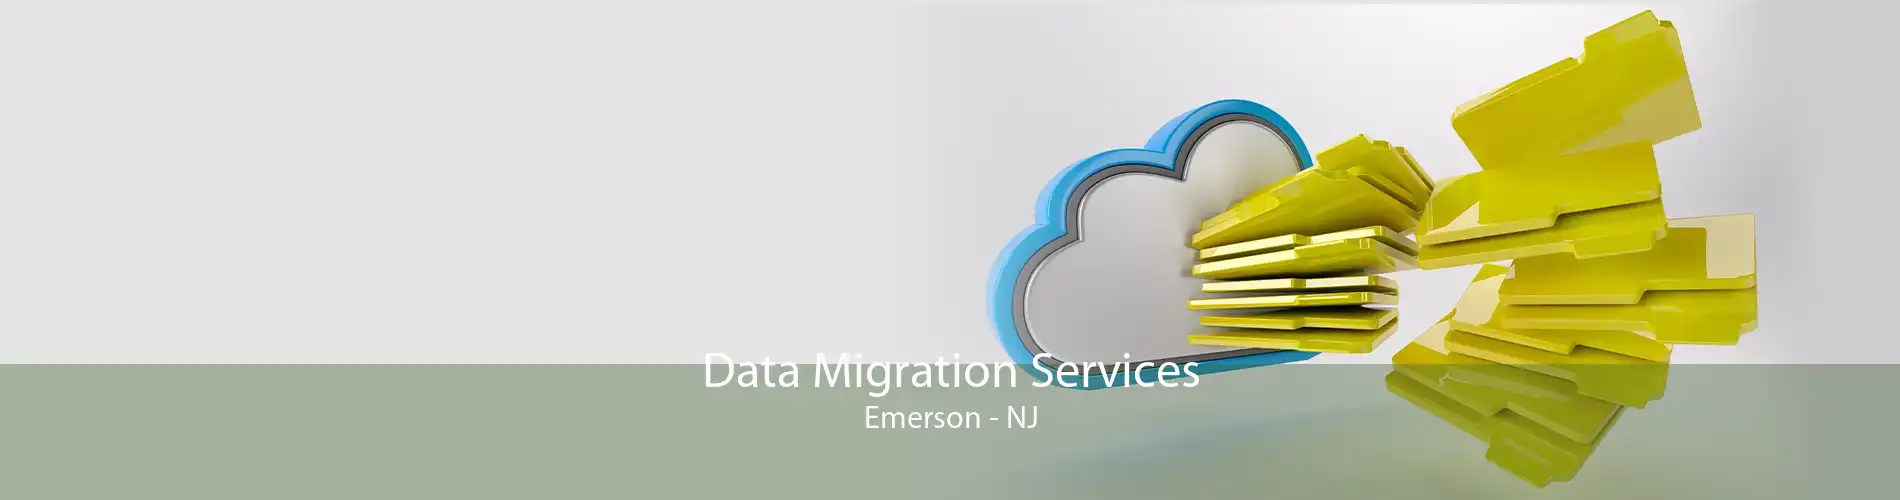 Data Migration Services Emerson - NJ